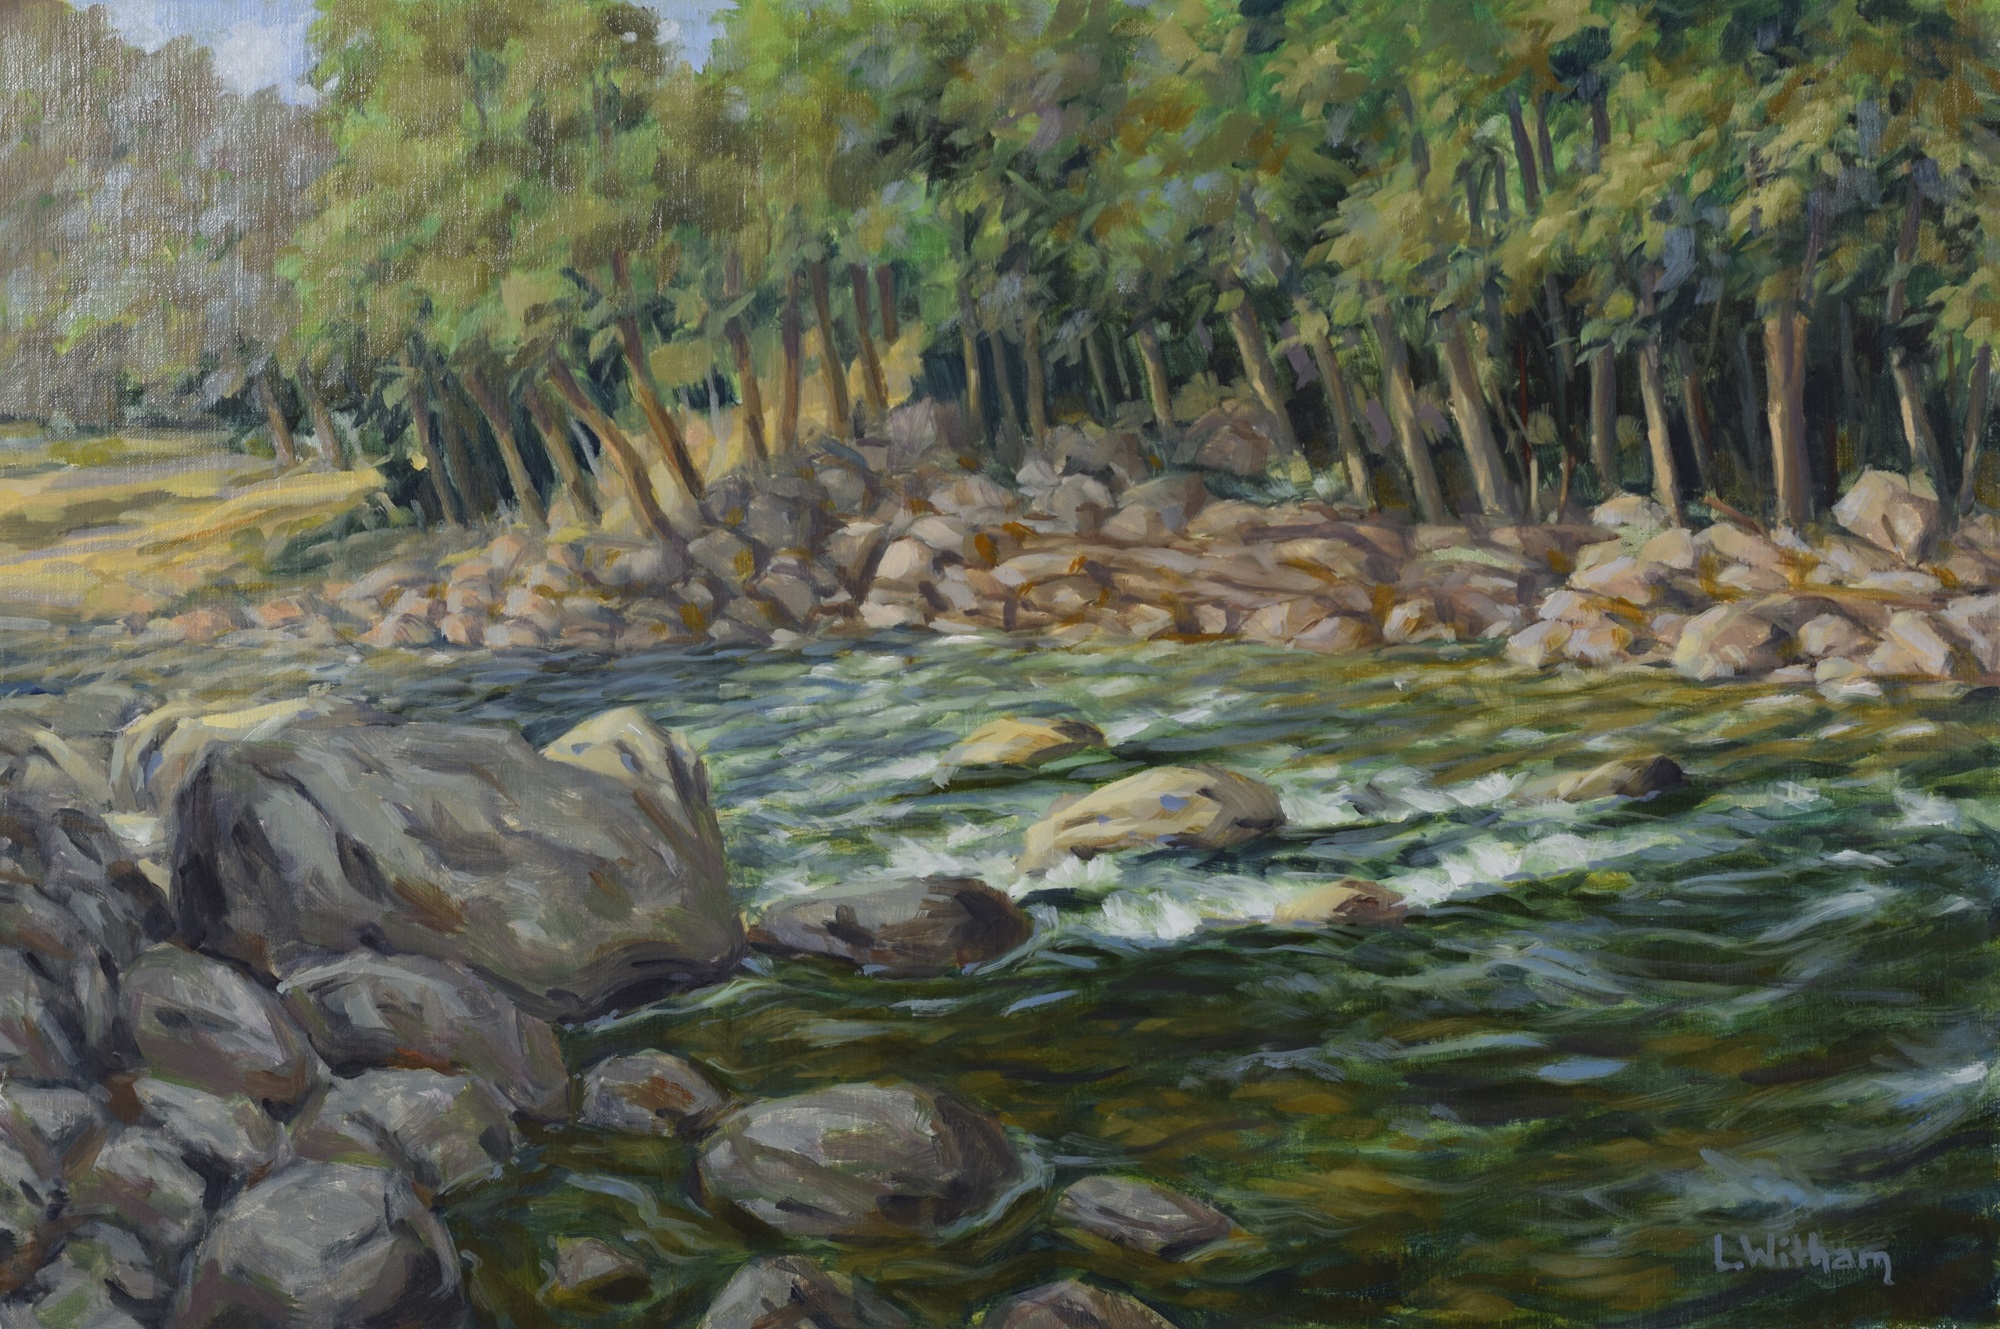 Tumbling River, Oil on linen, 12x18